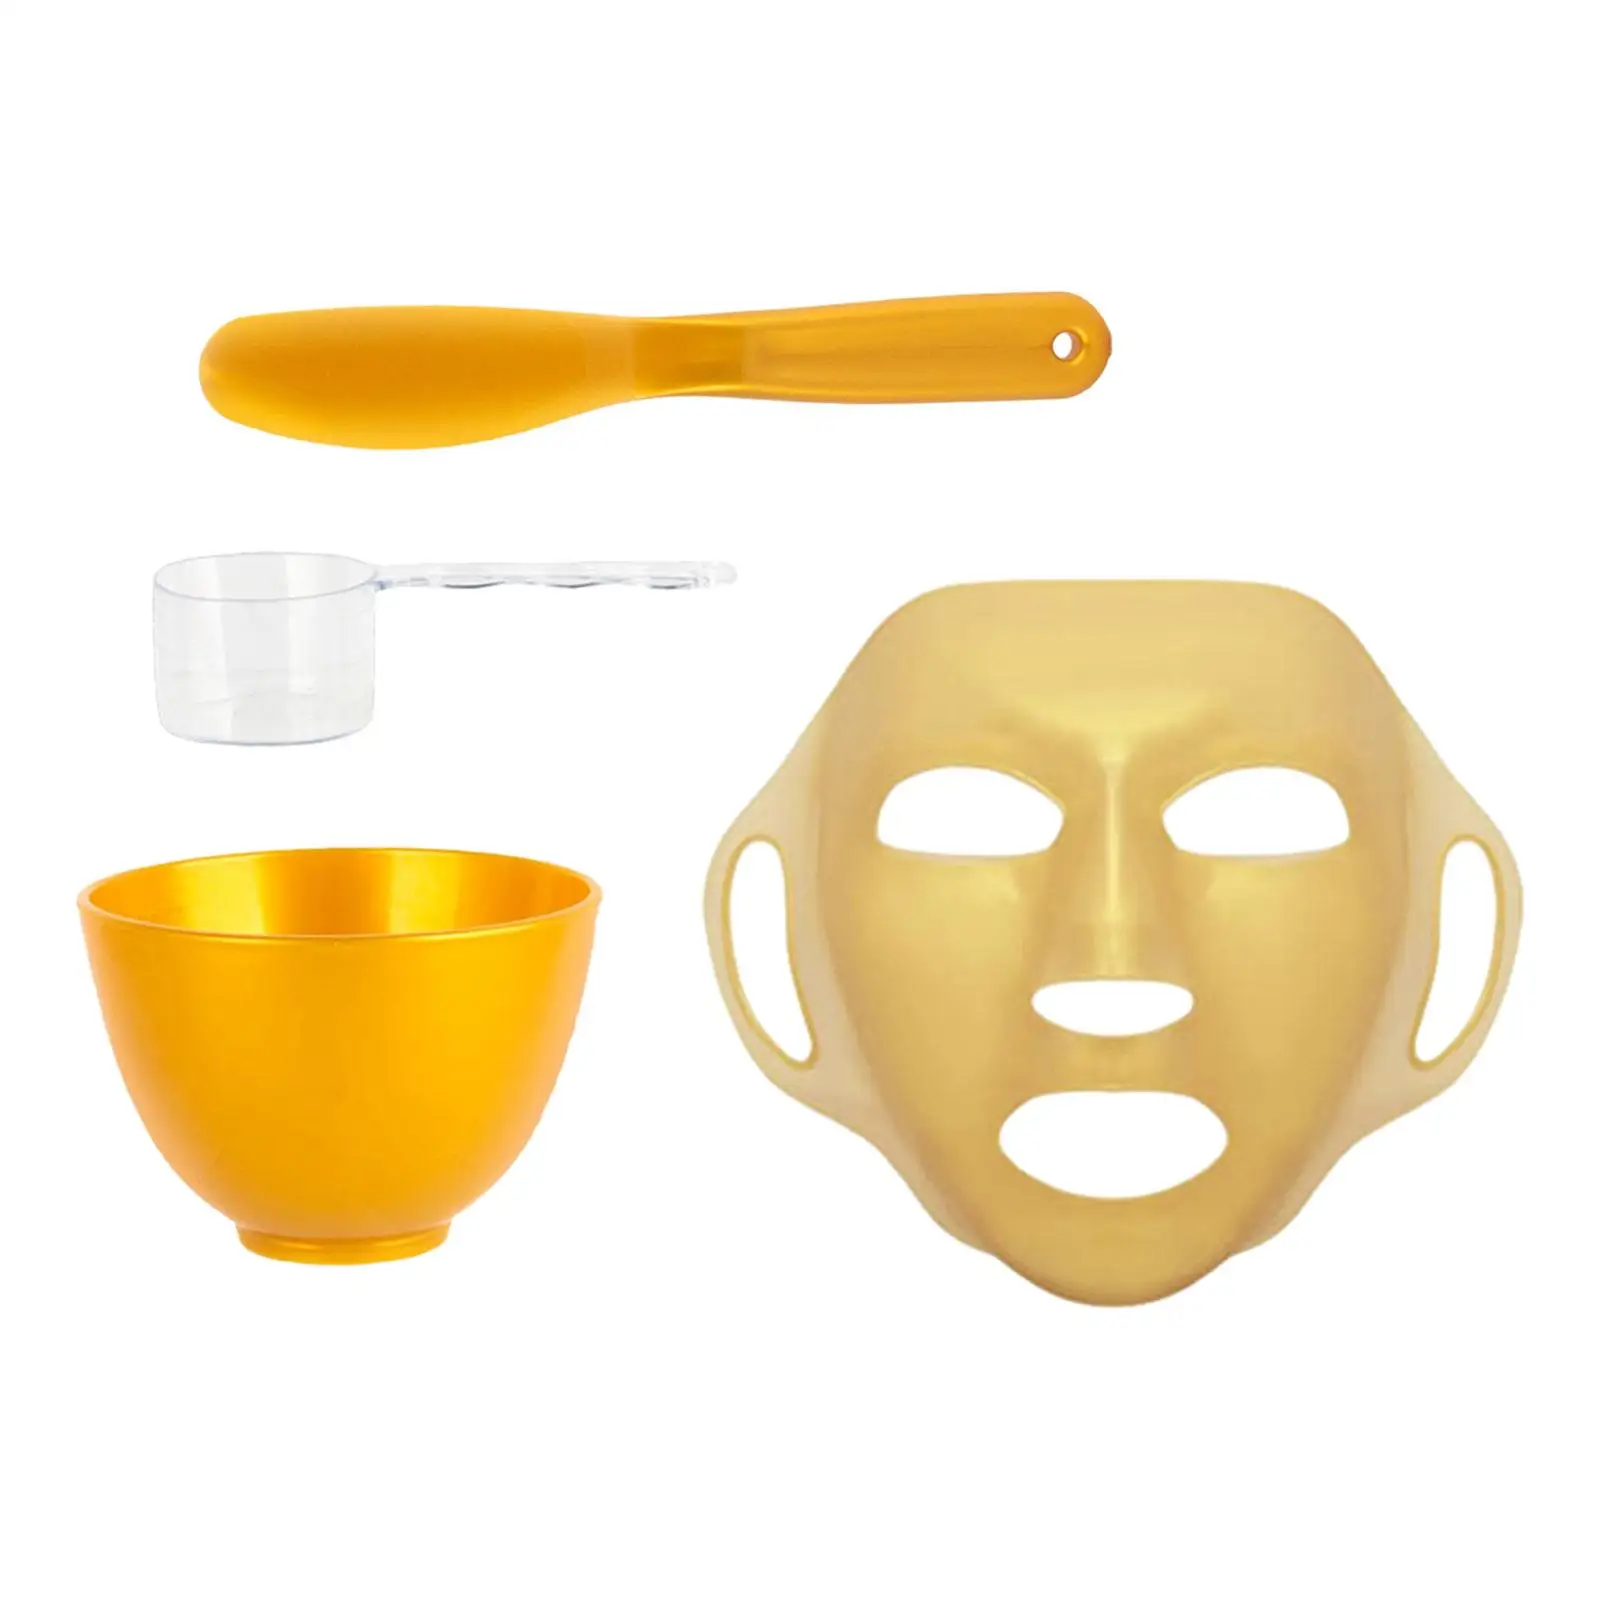 Silicone Facial Mask DIY Facial Mask Mixing Tool Kit Mixing Bowl 4 Pieces Mixing